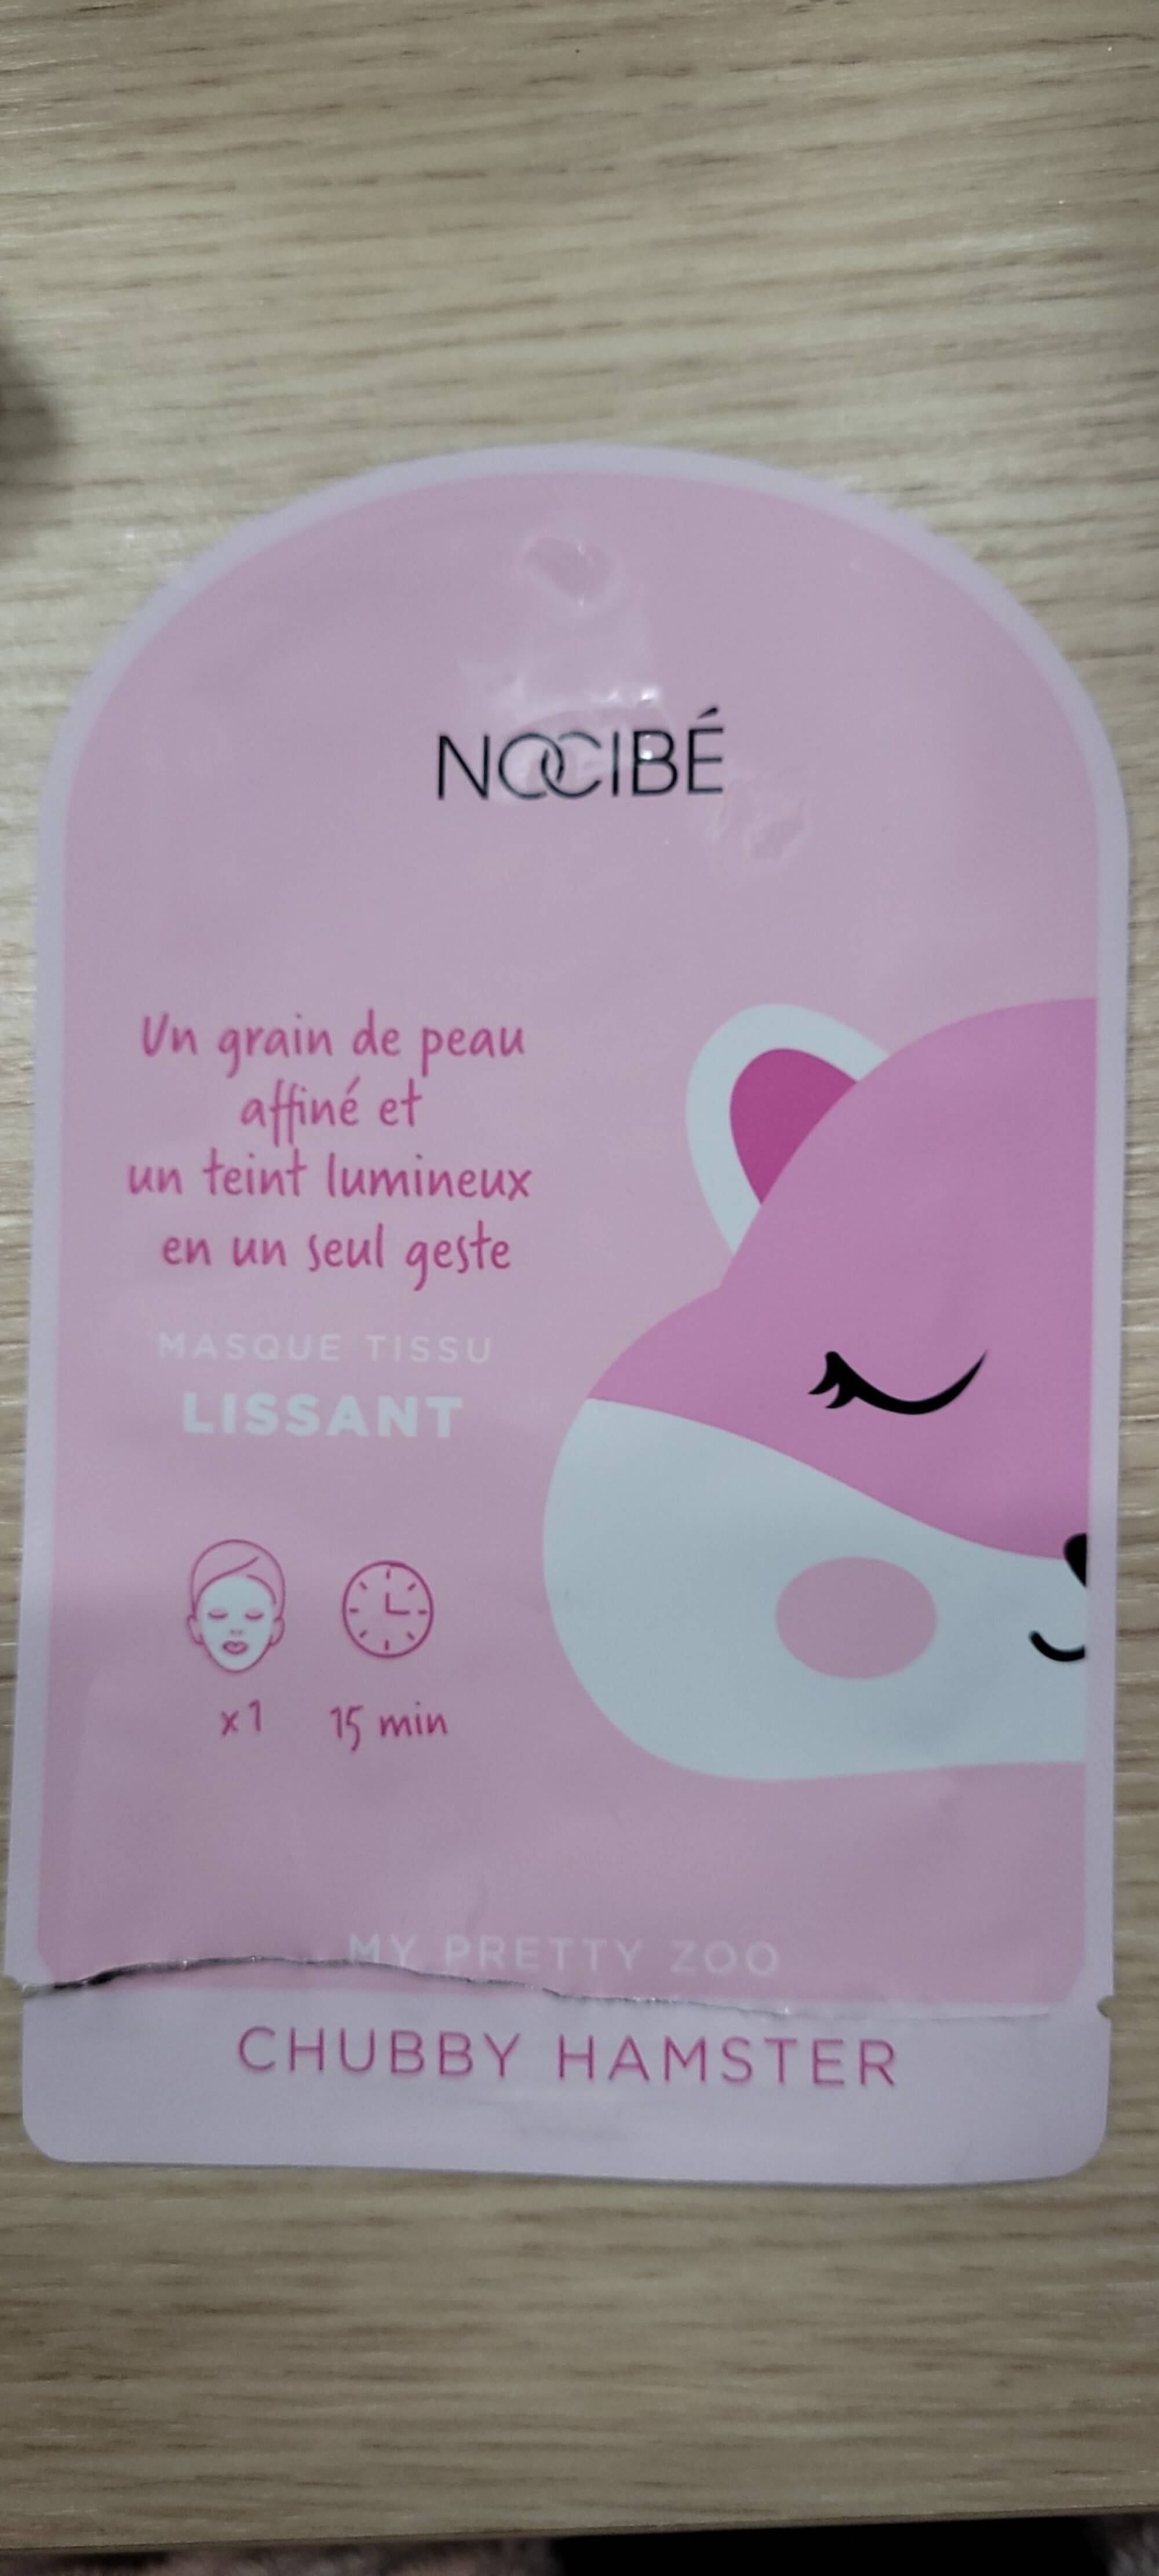 NOCIBÉ - My pretty zoo - Masque tissu